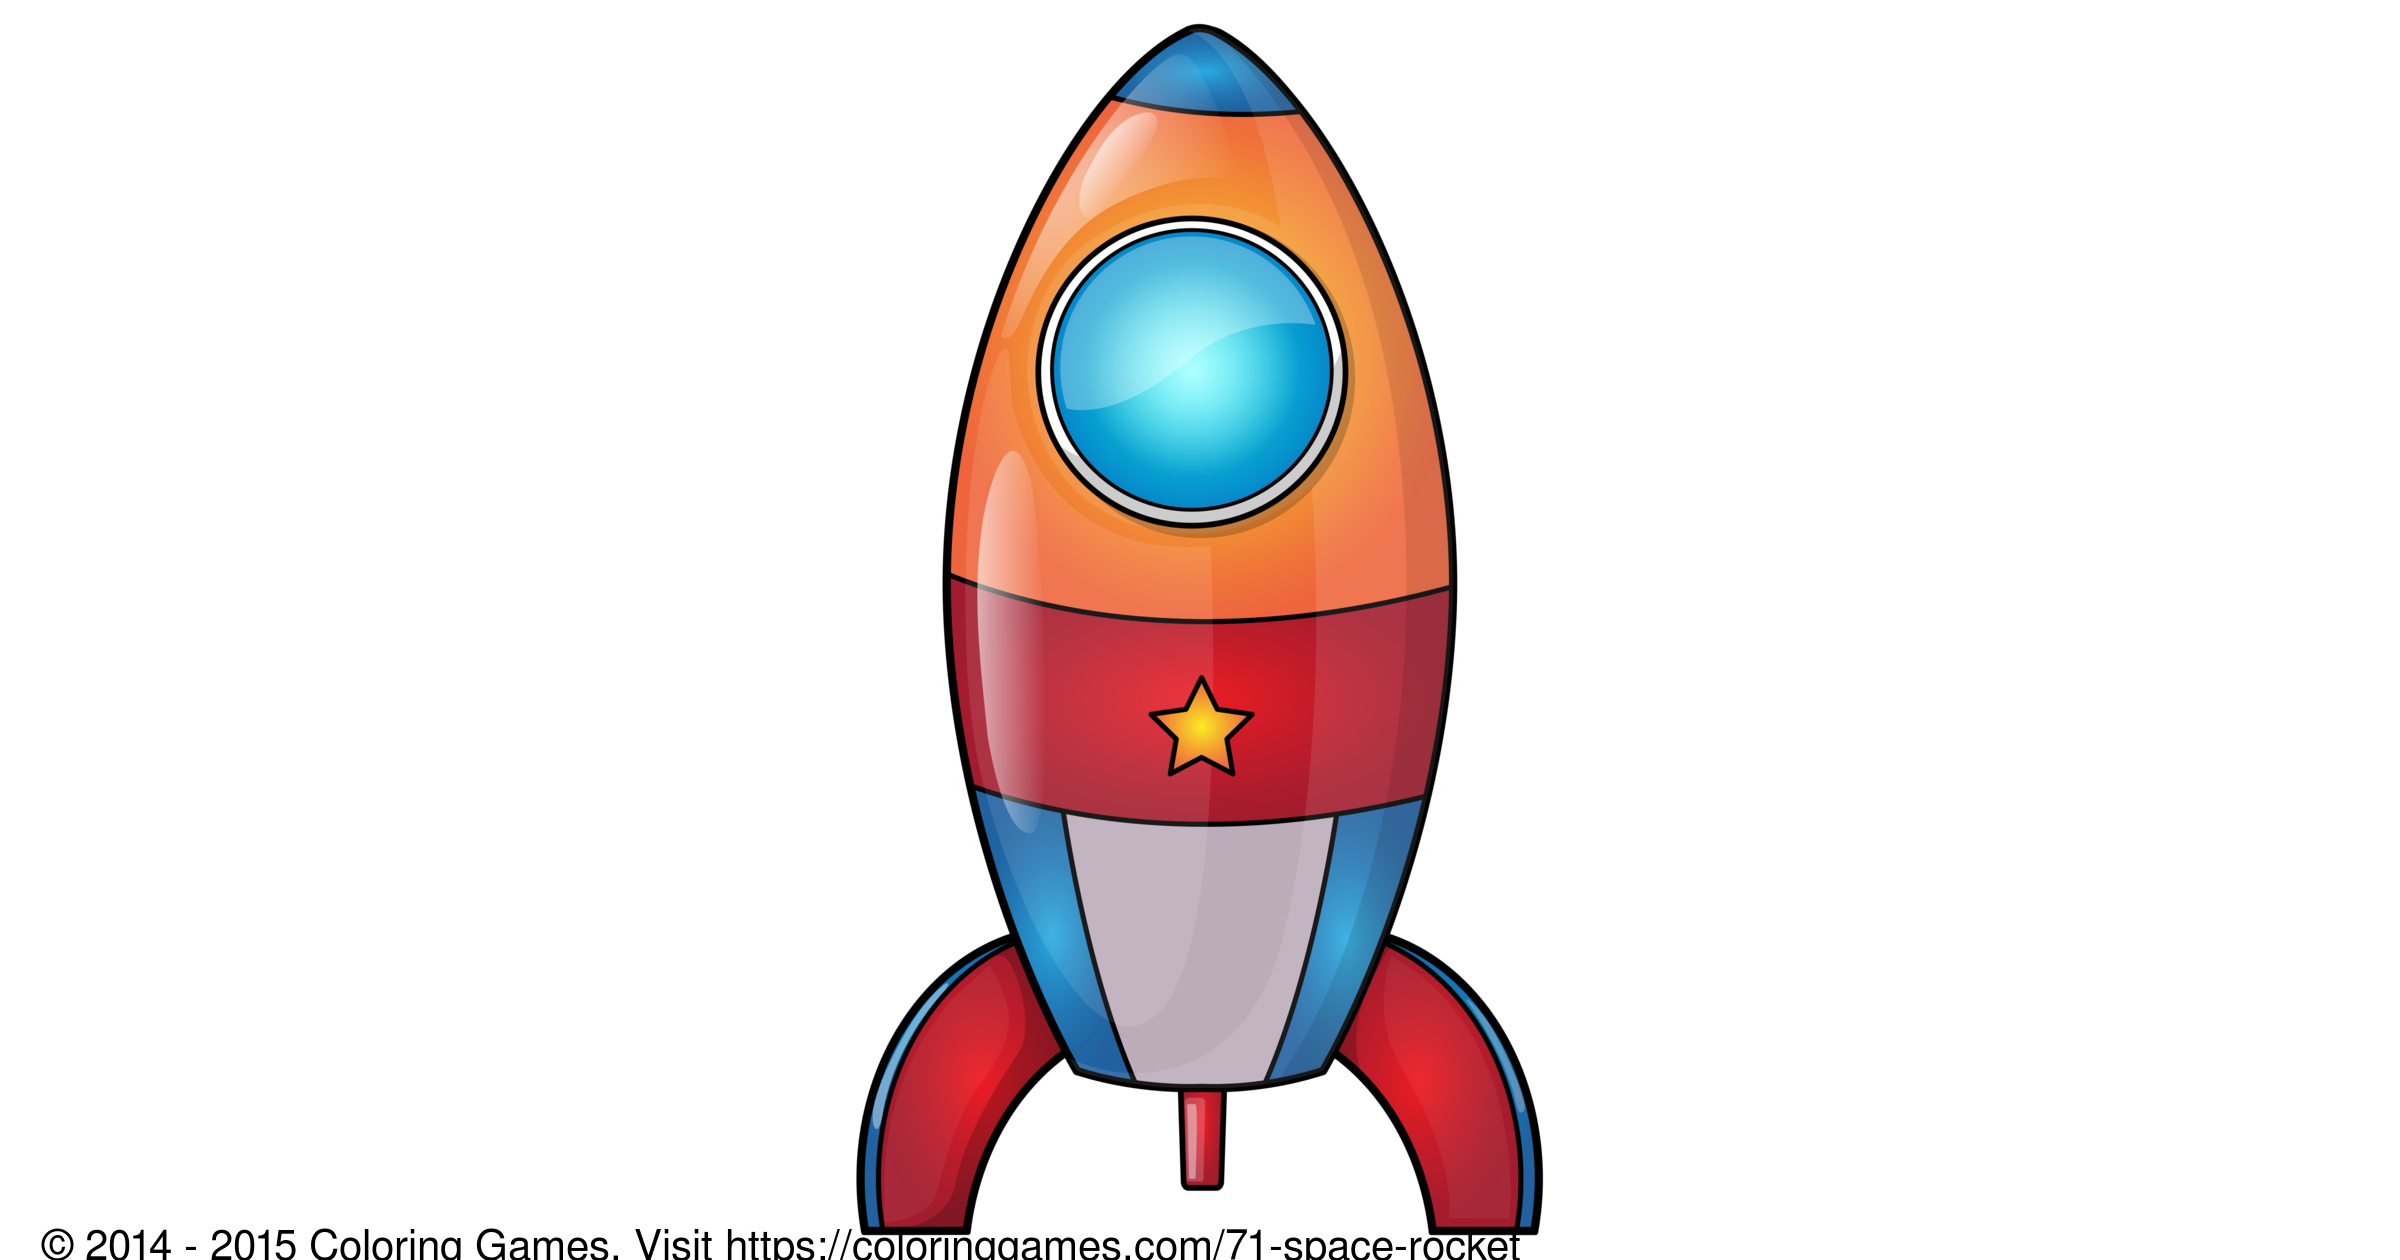 Картинки ракеты для детей дошкольного возраста. Ракета для детей. Космическая ракета для детей. Ракета рисунок. Ракета рисунок для детей.